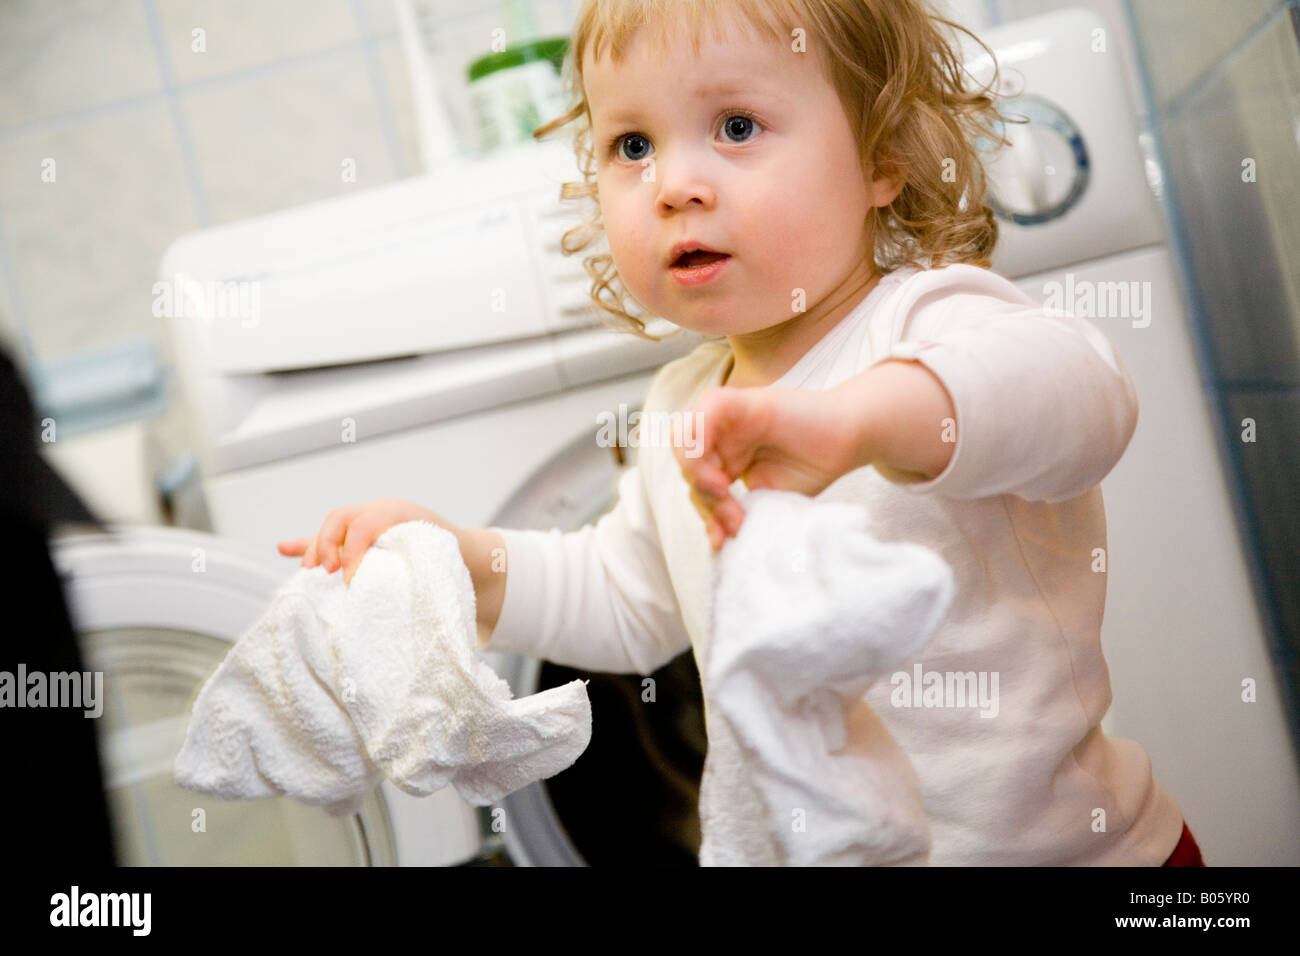 Nahaufnahme eines Mädchens hält ein Taschentuch und stand vor einer  Waschmaschine Stockfotografie - Alamy